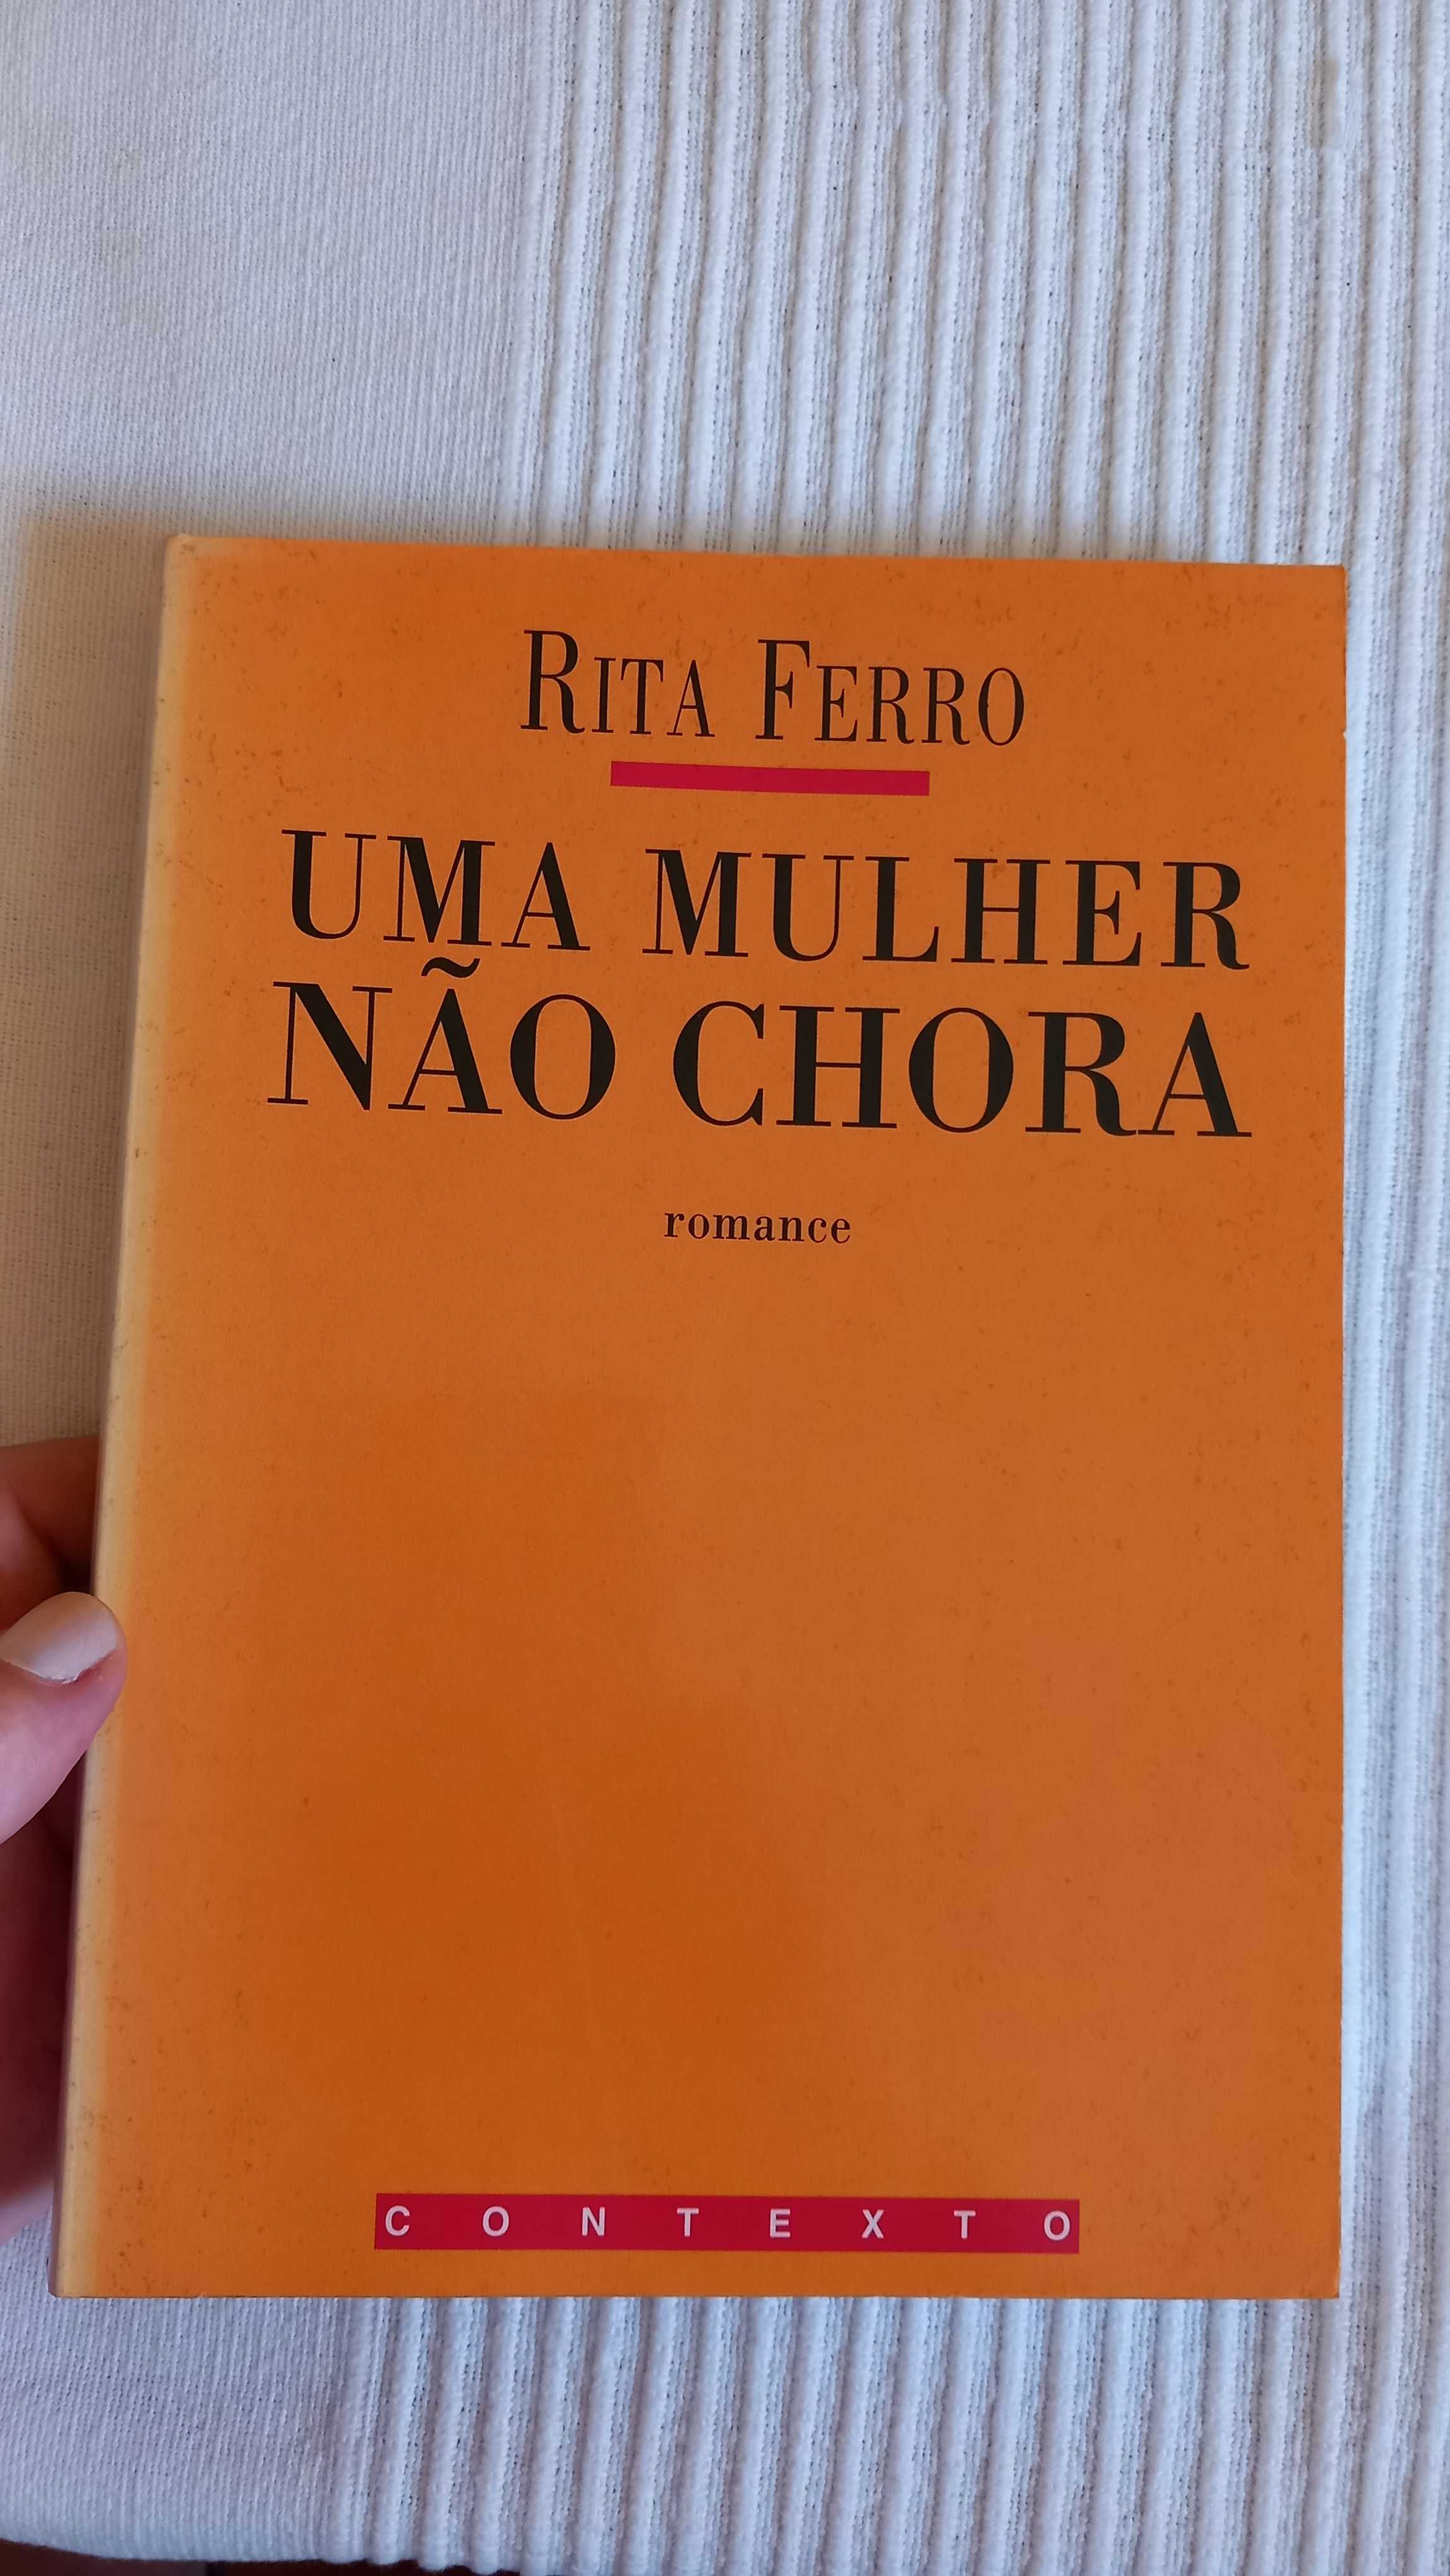 Livros Rita Ferro e Marta Gautier